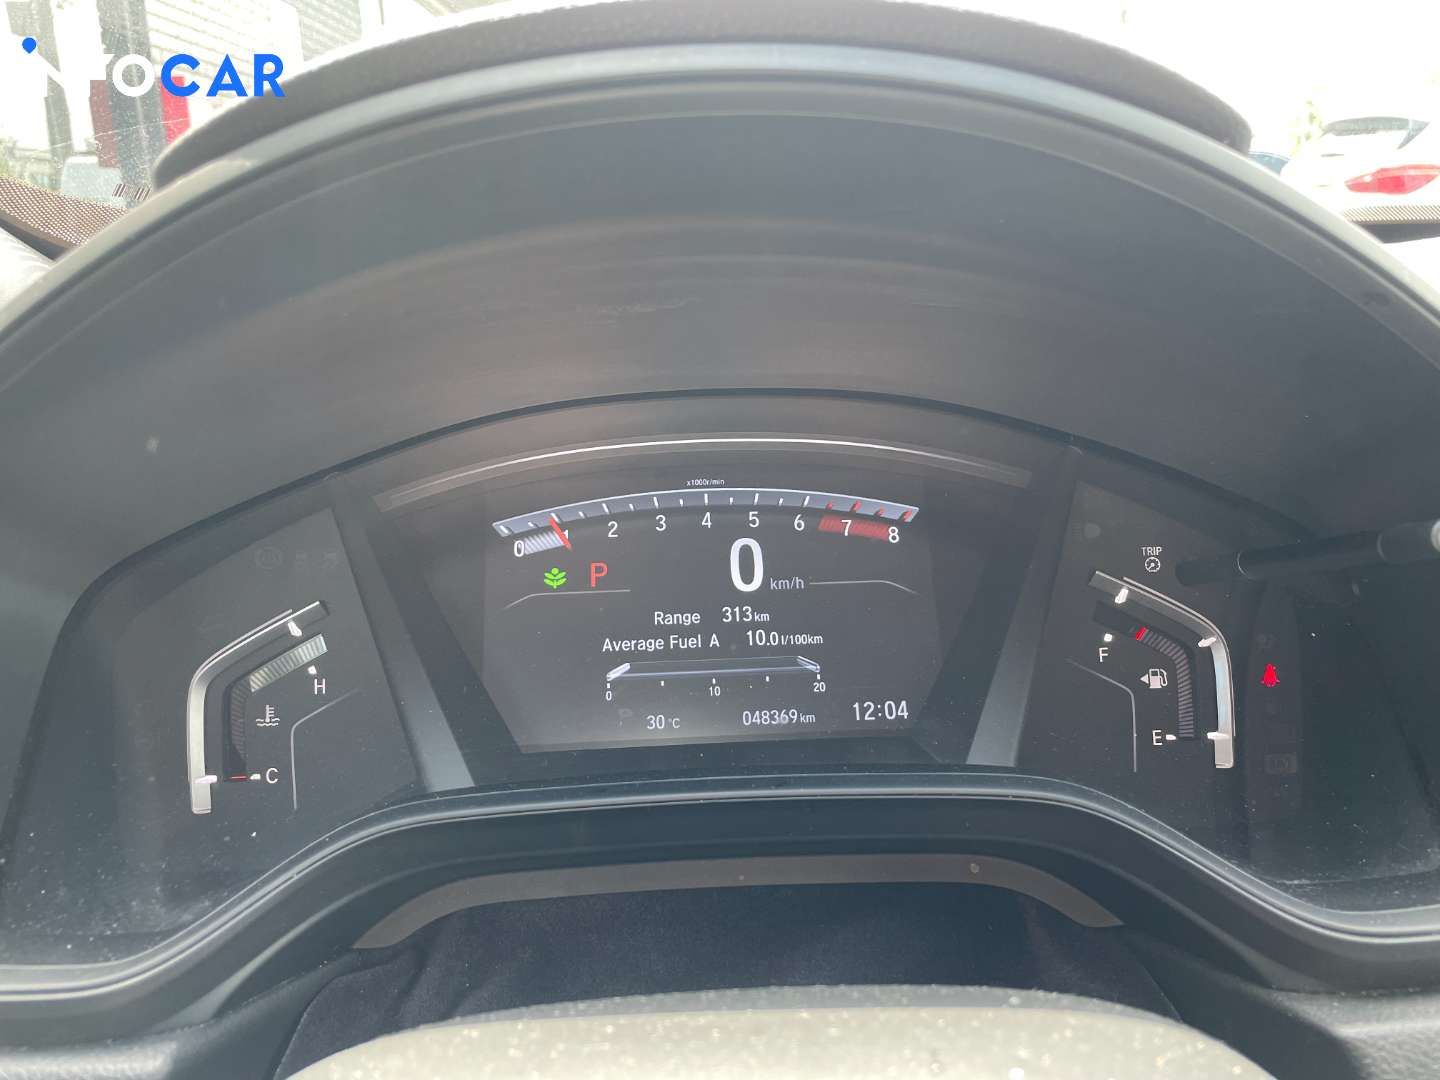 2019 Honda CR-V LX - INFOCAR - Toronto Auto Trading Platform